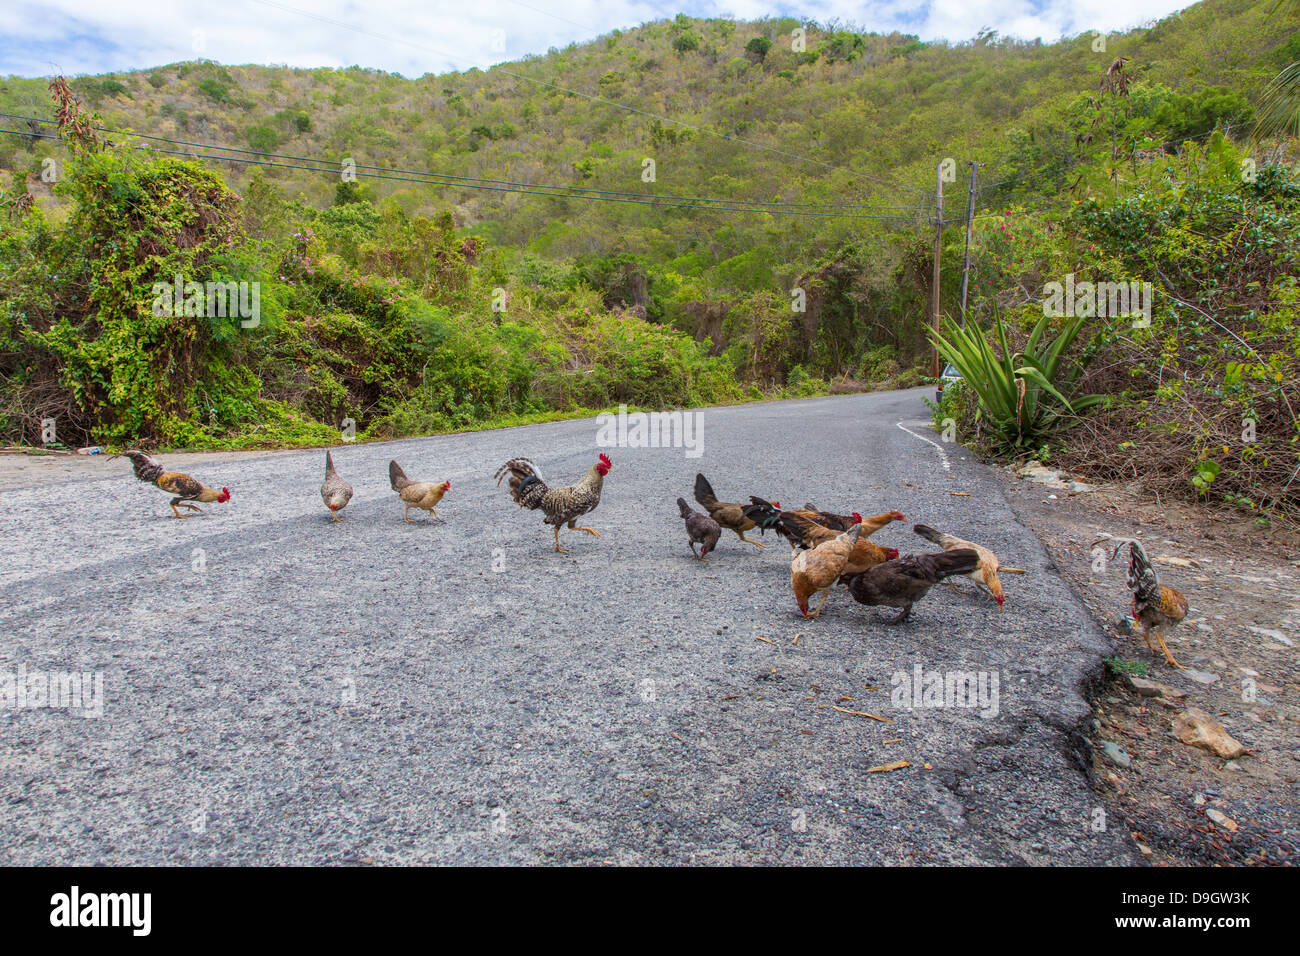 Poulets dans la route sur l'île des Caraïbes de St John dans les îles Vierges américaines Banque D'Images